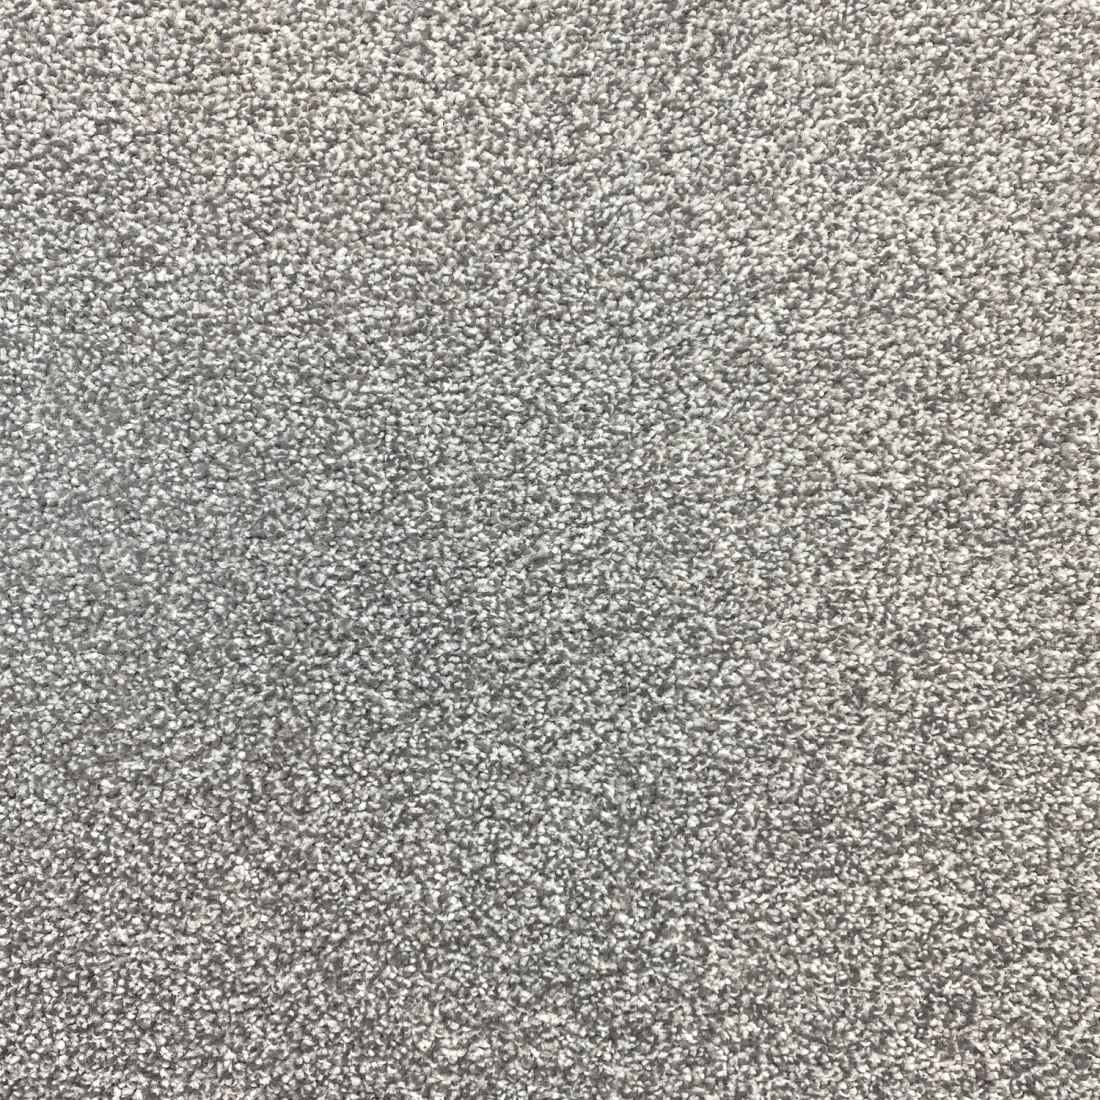 Invincible Rustic Stain Resistant Twist Carpet - Platinum